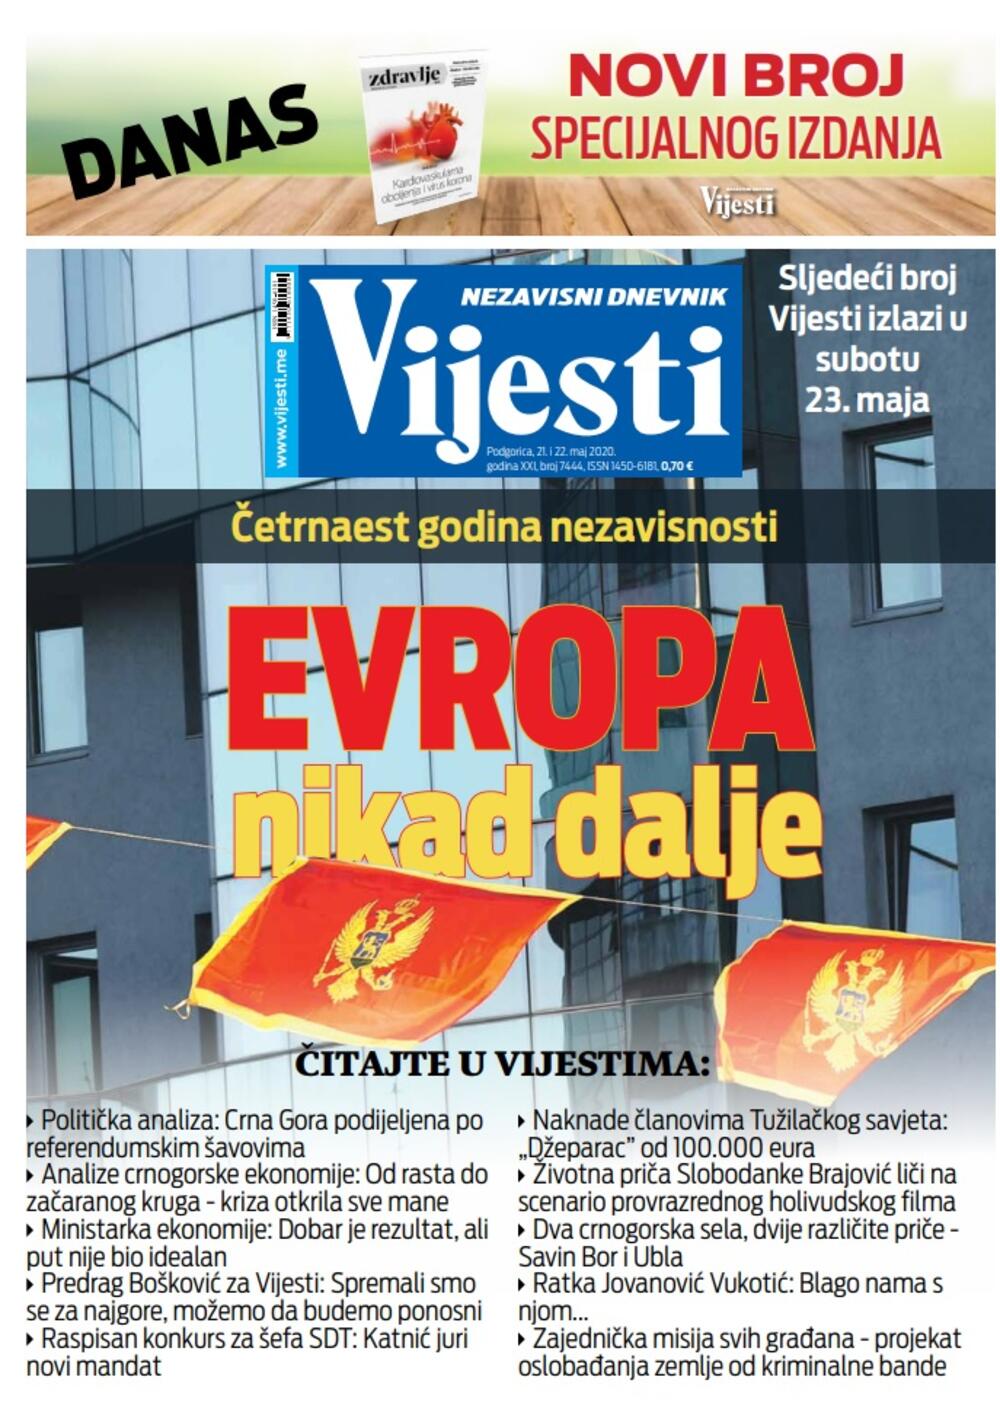 Naslovna strana "Vijesti" za 21. i 22. maj 2020., Foto: Vijesti